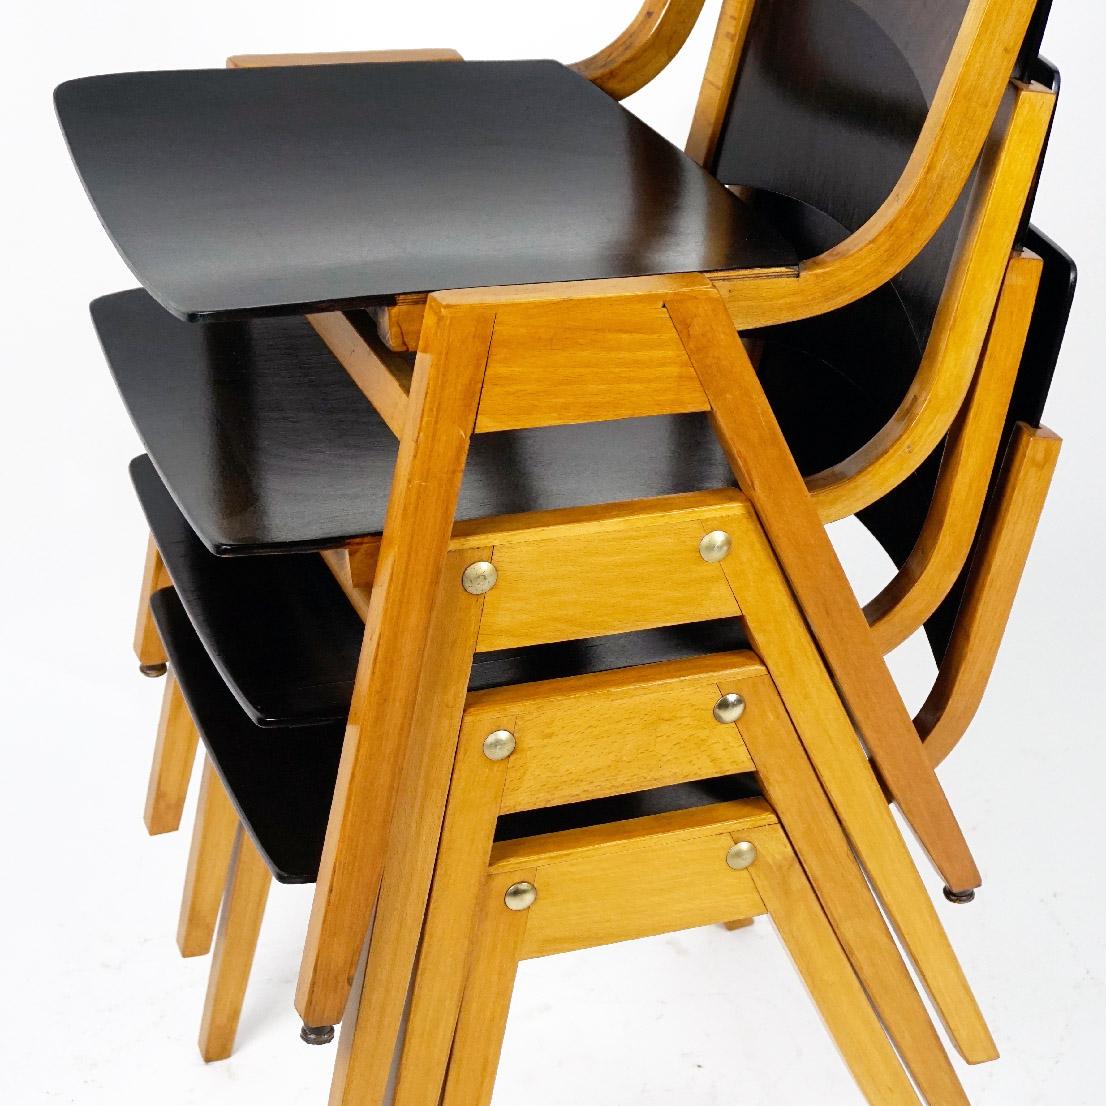 Chaises empilables autrichiennes en bois de hêtre du milieu du siècle, conçues par Roland Rainer en 1952, en même temps que le célèbre modèle appelé Stadthallenstuhl. Le modèle P7 a également été utilisé à la Stadthalle de Vienne, principalement